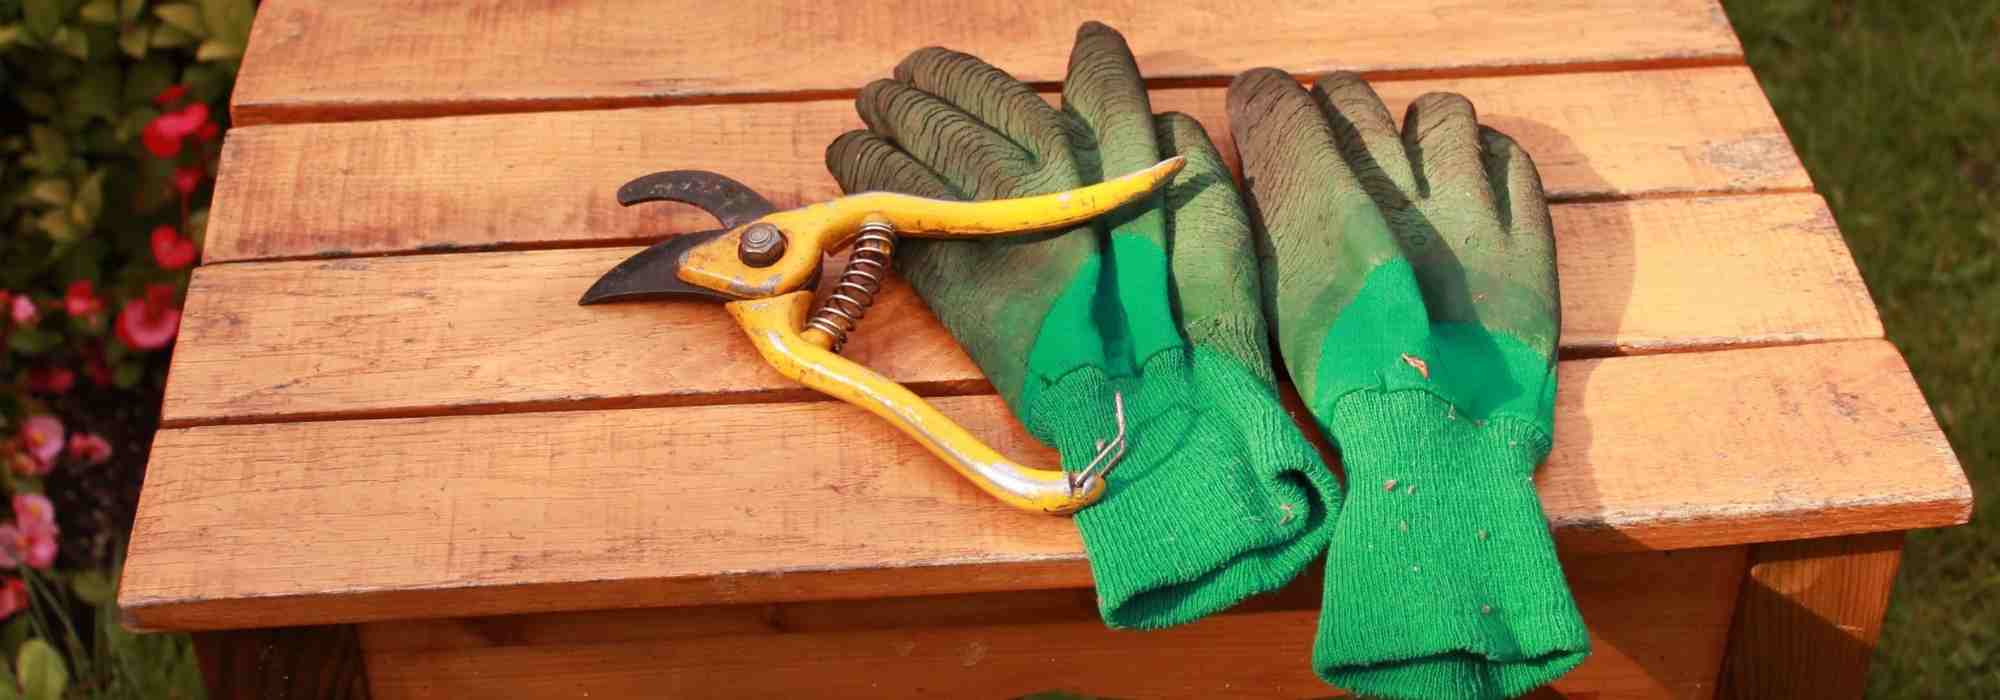 Gants de jardinage pro special grosses épines débroussaillage